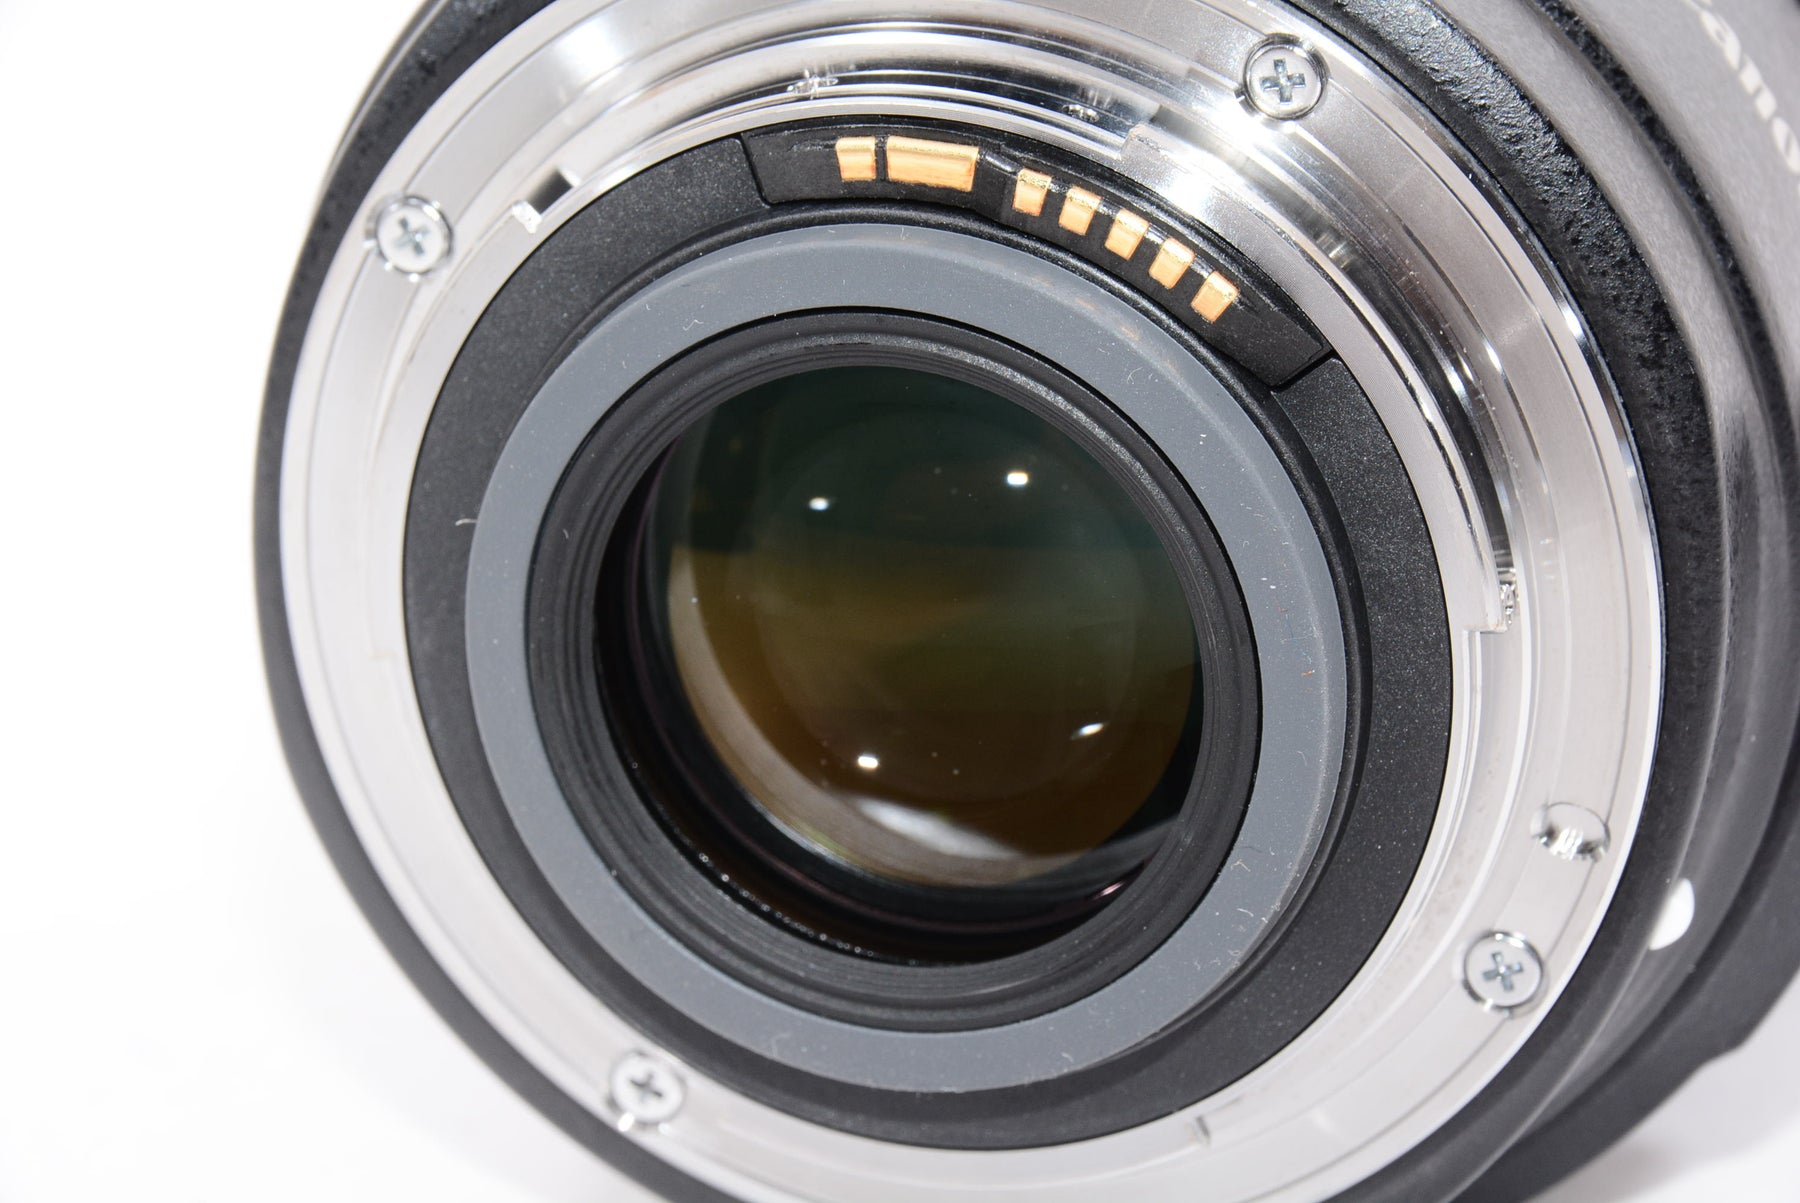 【外観特上級】Canon 標準ズームレンズ EF-S17-55mm F2.8 IS USM APS-C対応